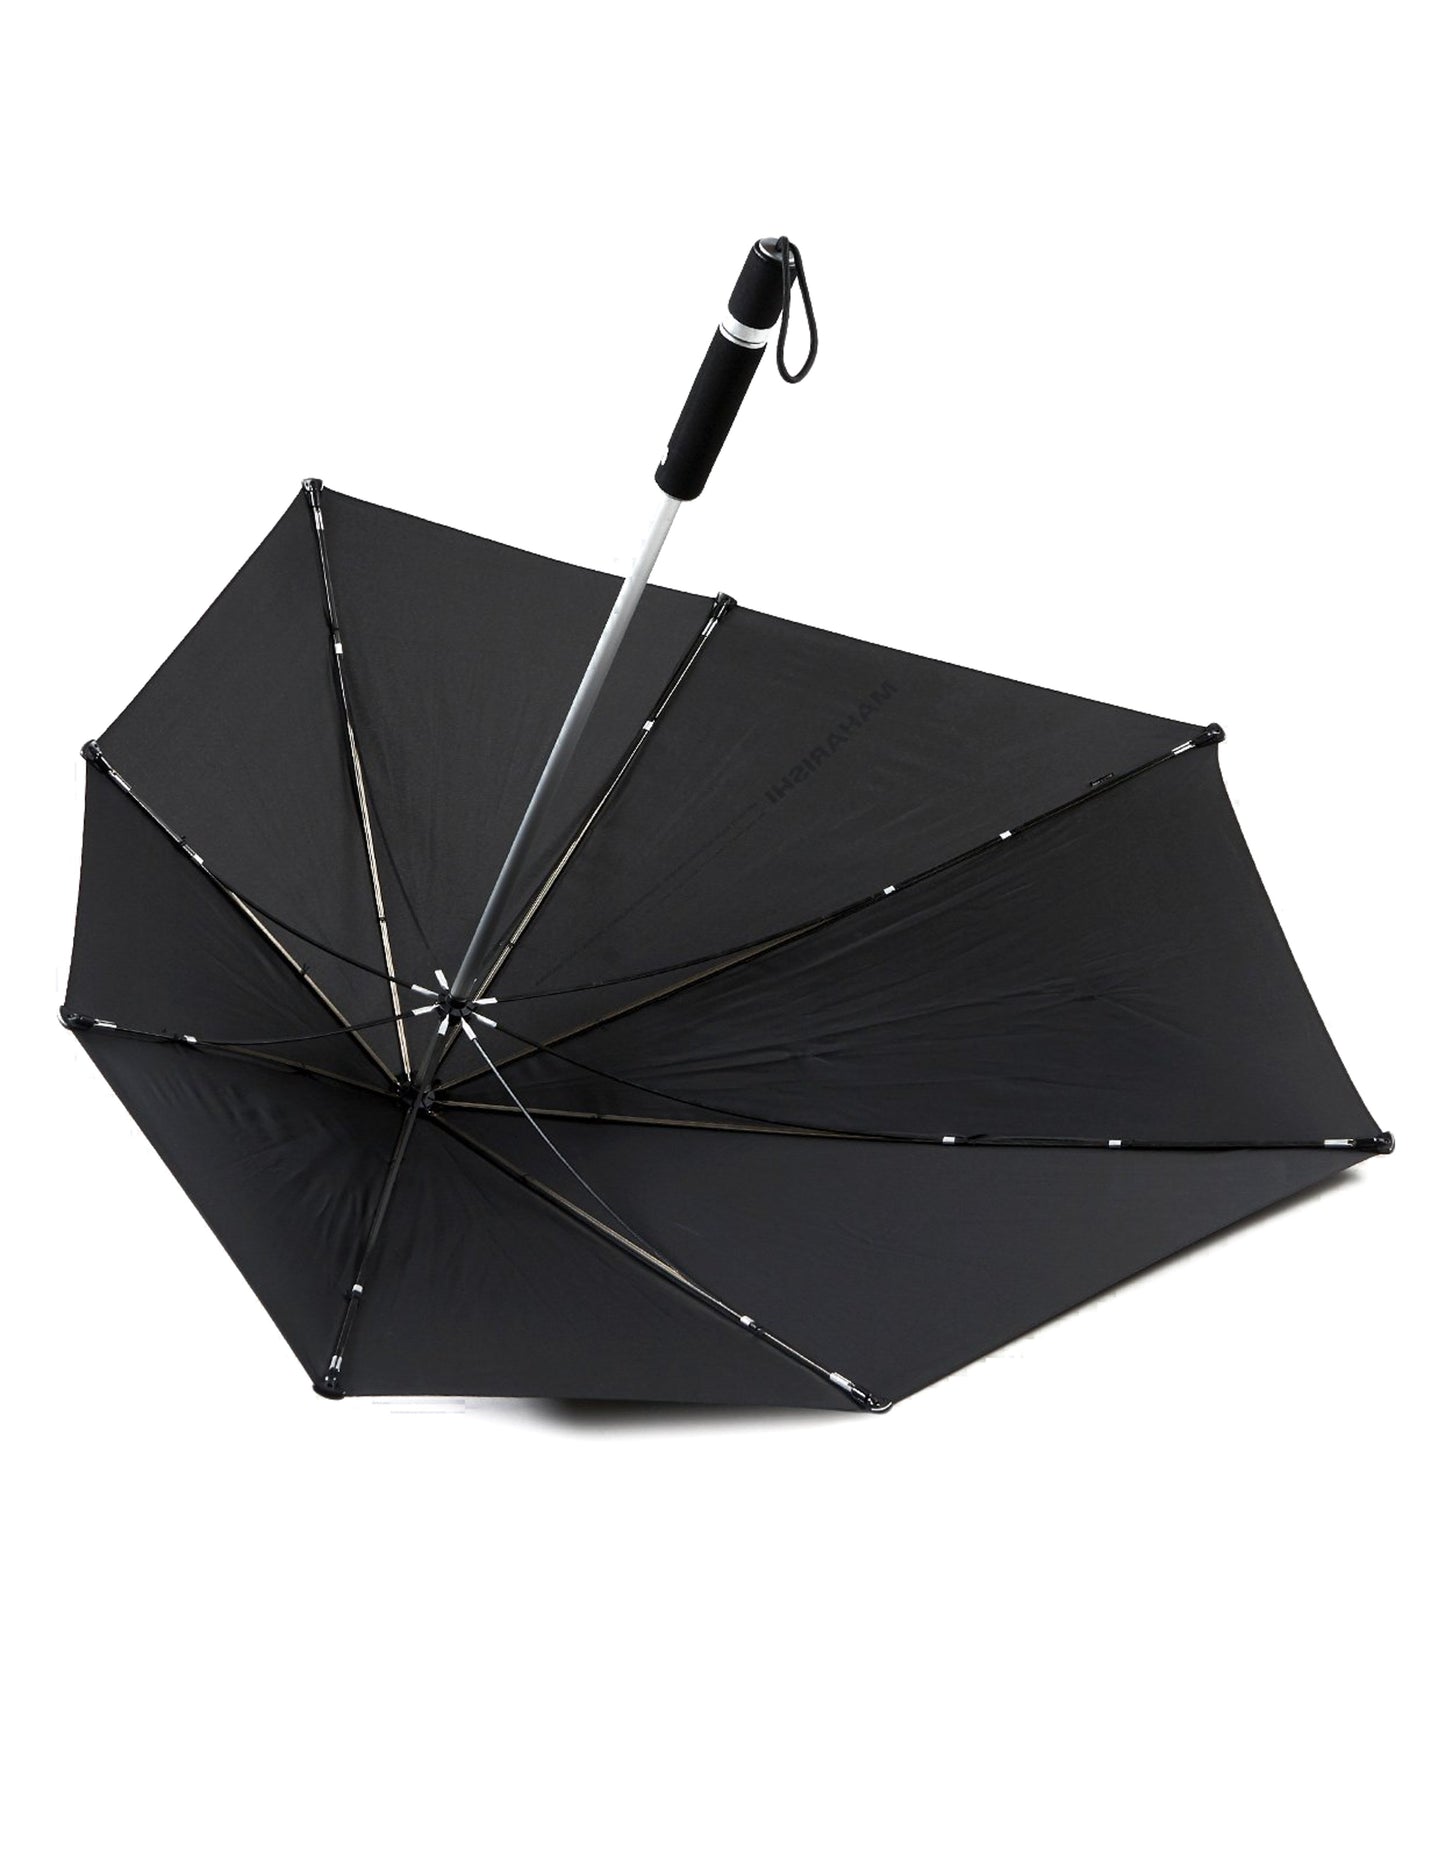 Maharishi Senz° Original Umbrella